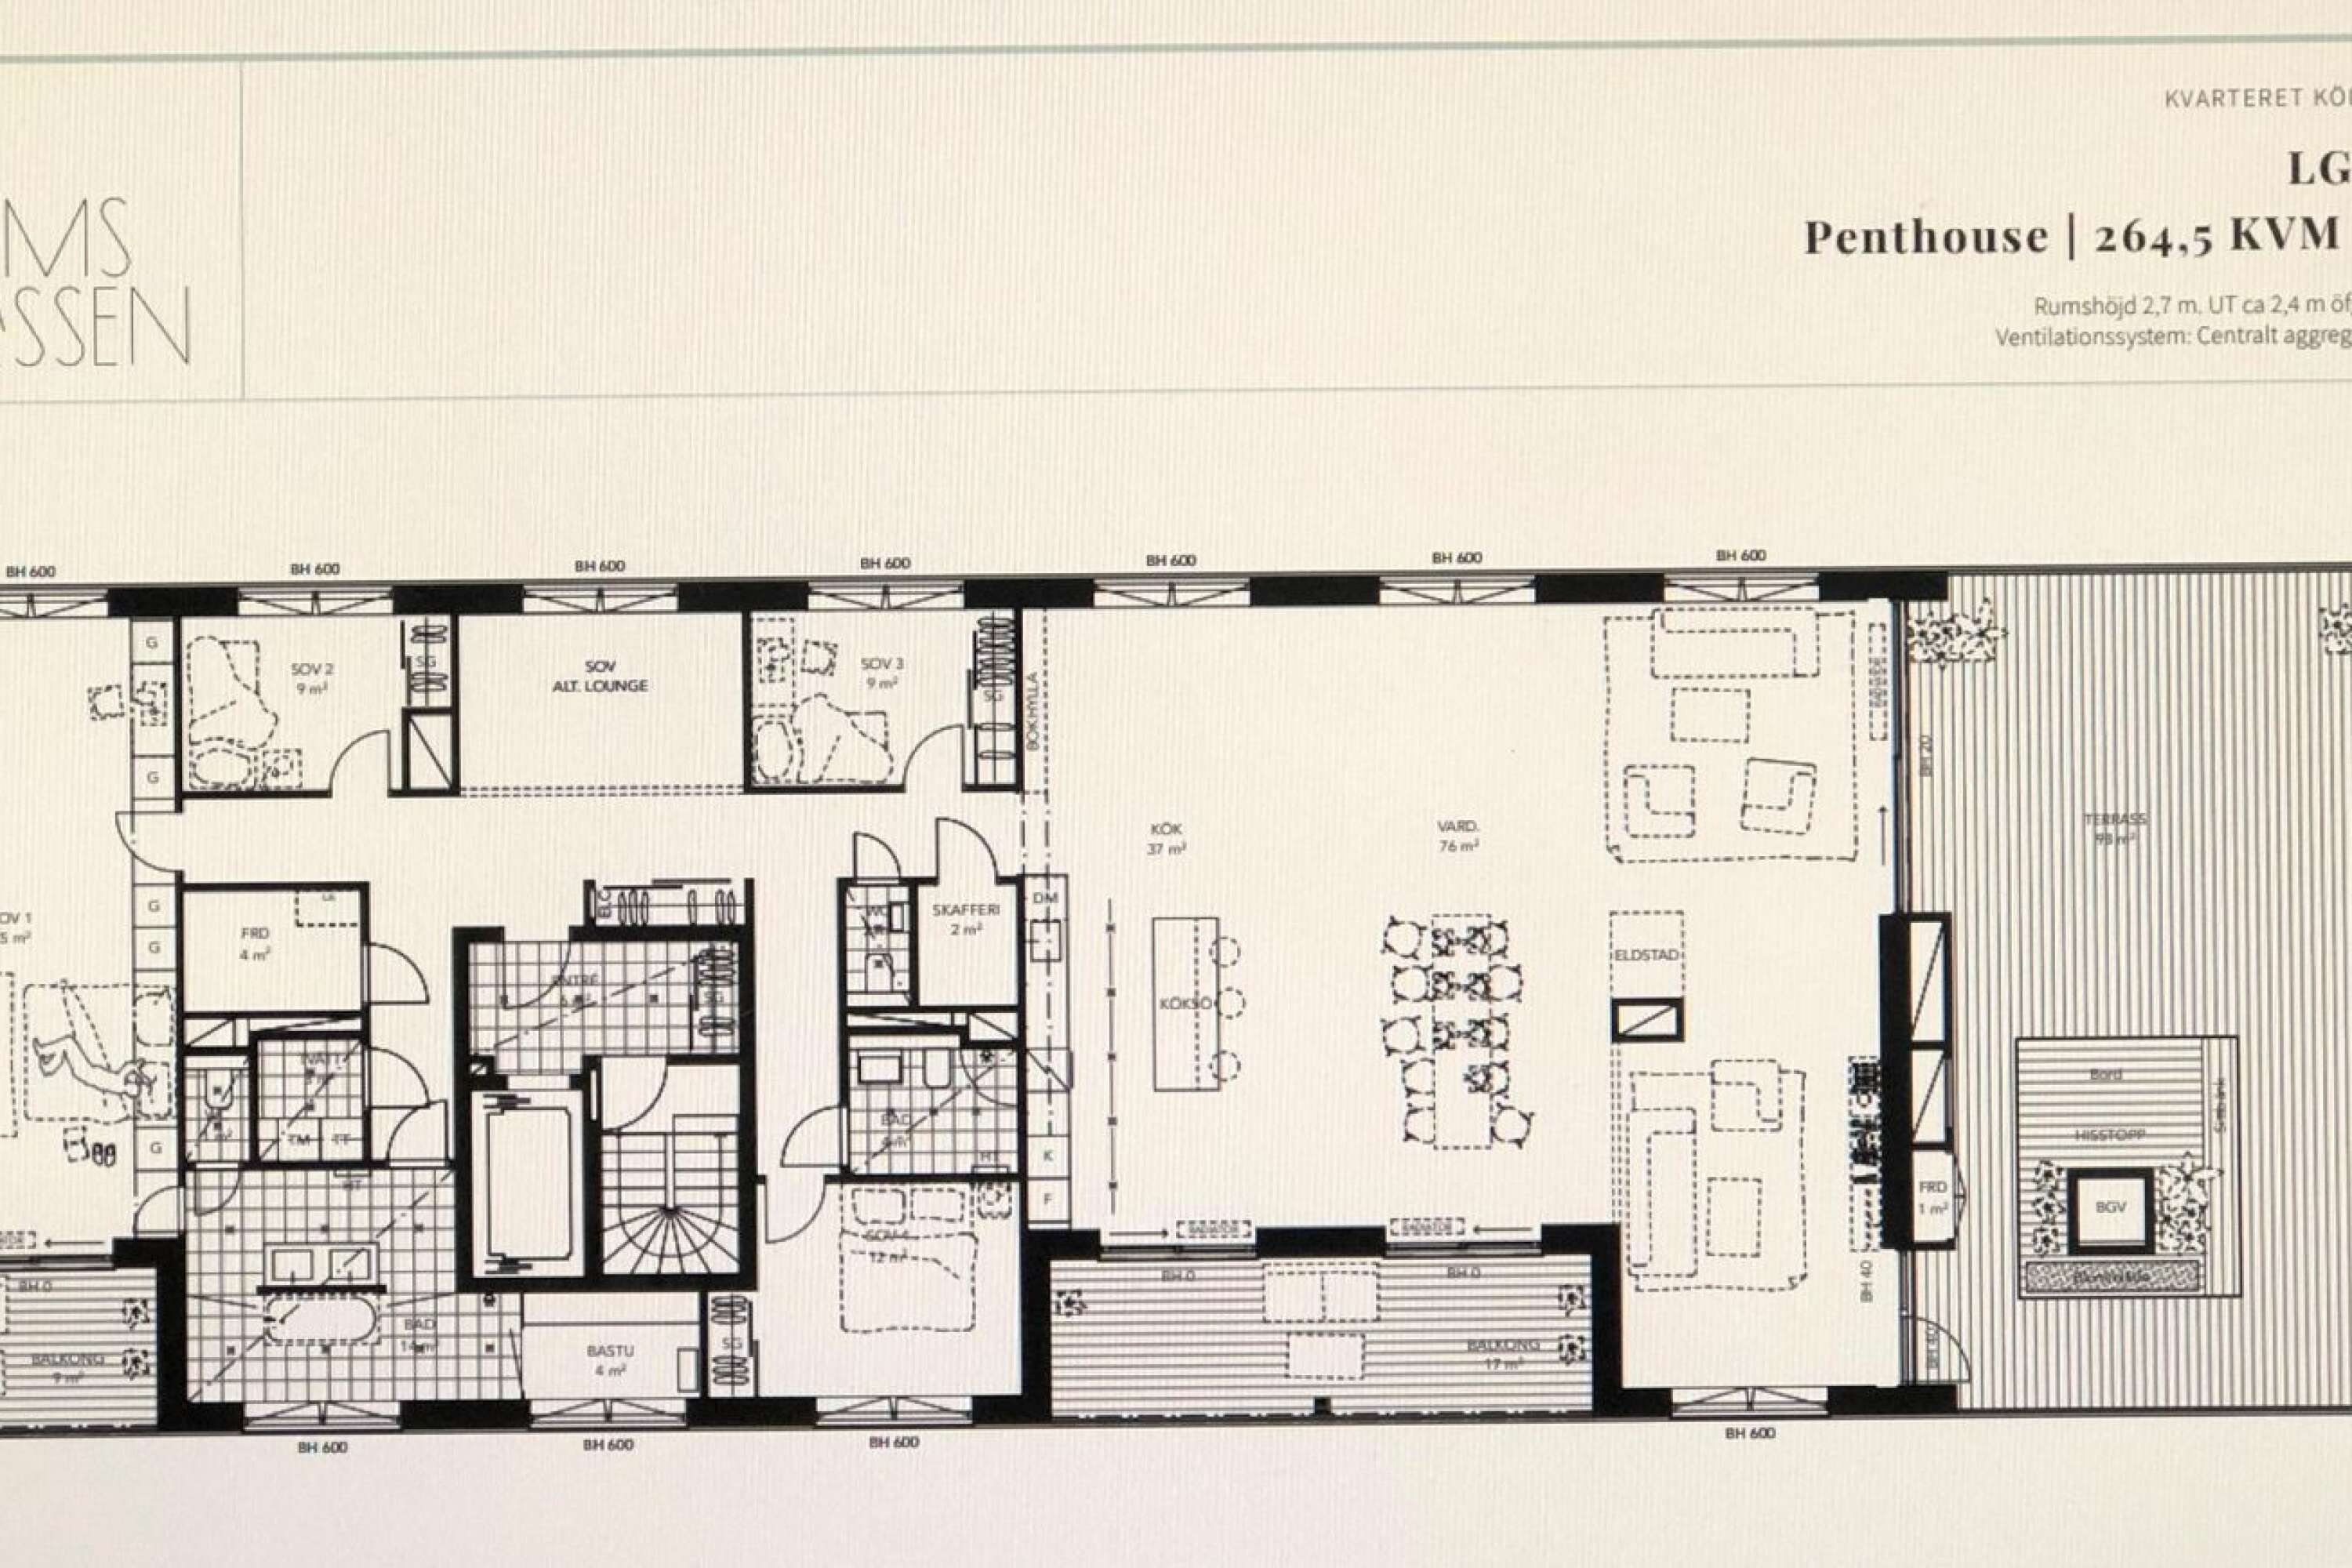 Så här kommer den nya sjurumslägenheten på 264,5 kvadratmeter utformas. Den innehåller bland annat ett vardagsrum på 76 kvadratmeter och ett kök på 37 kvadrat. Utanför dessa ytor finns det en hela 98 kvadratmeter stor terrass.